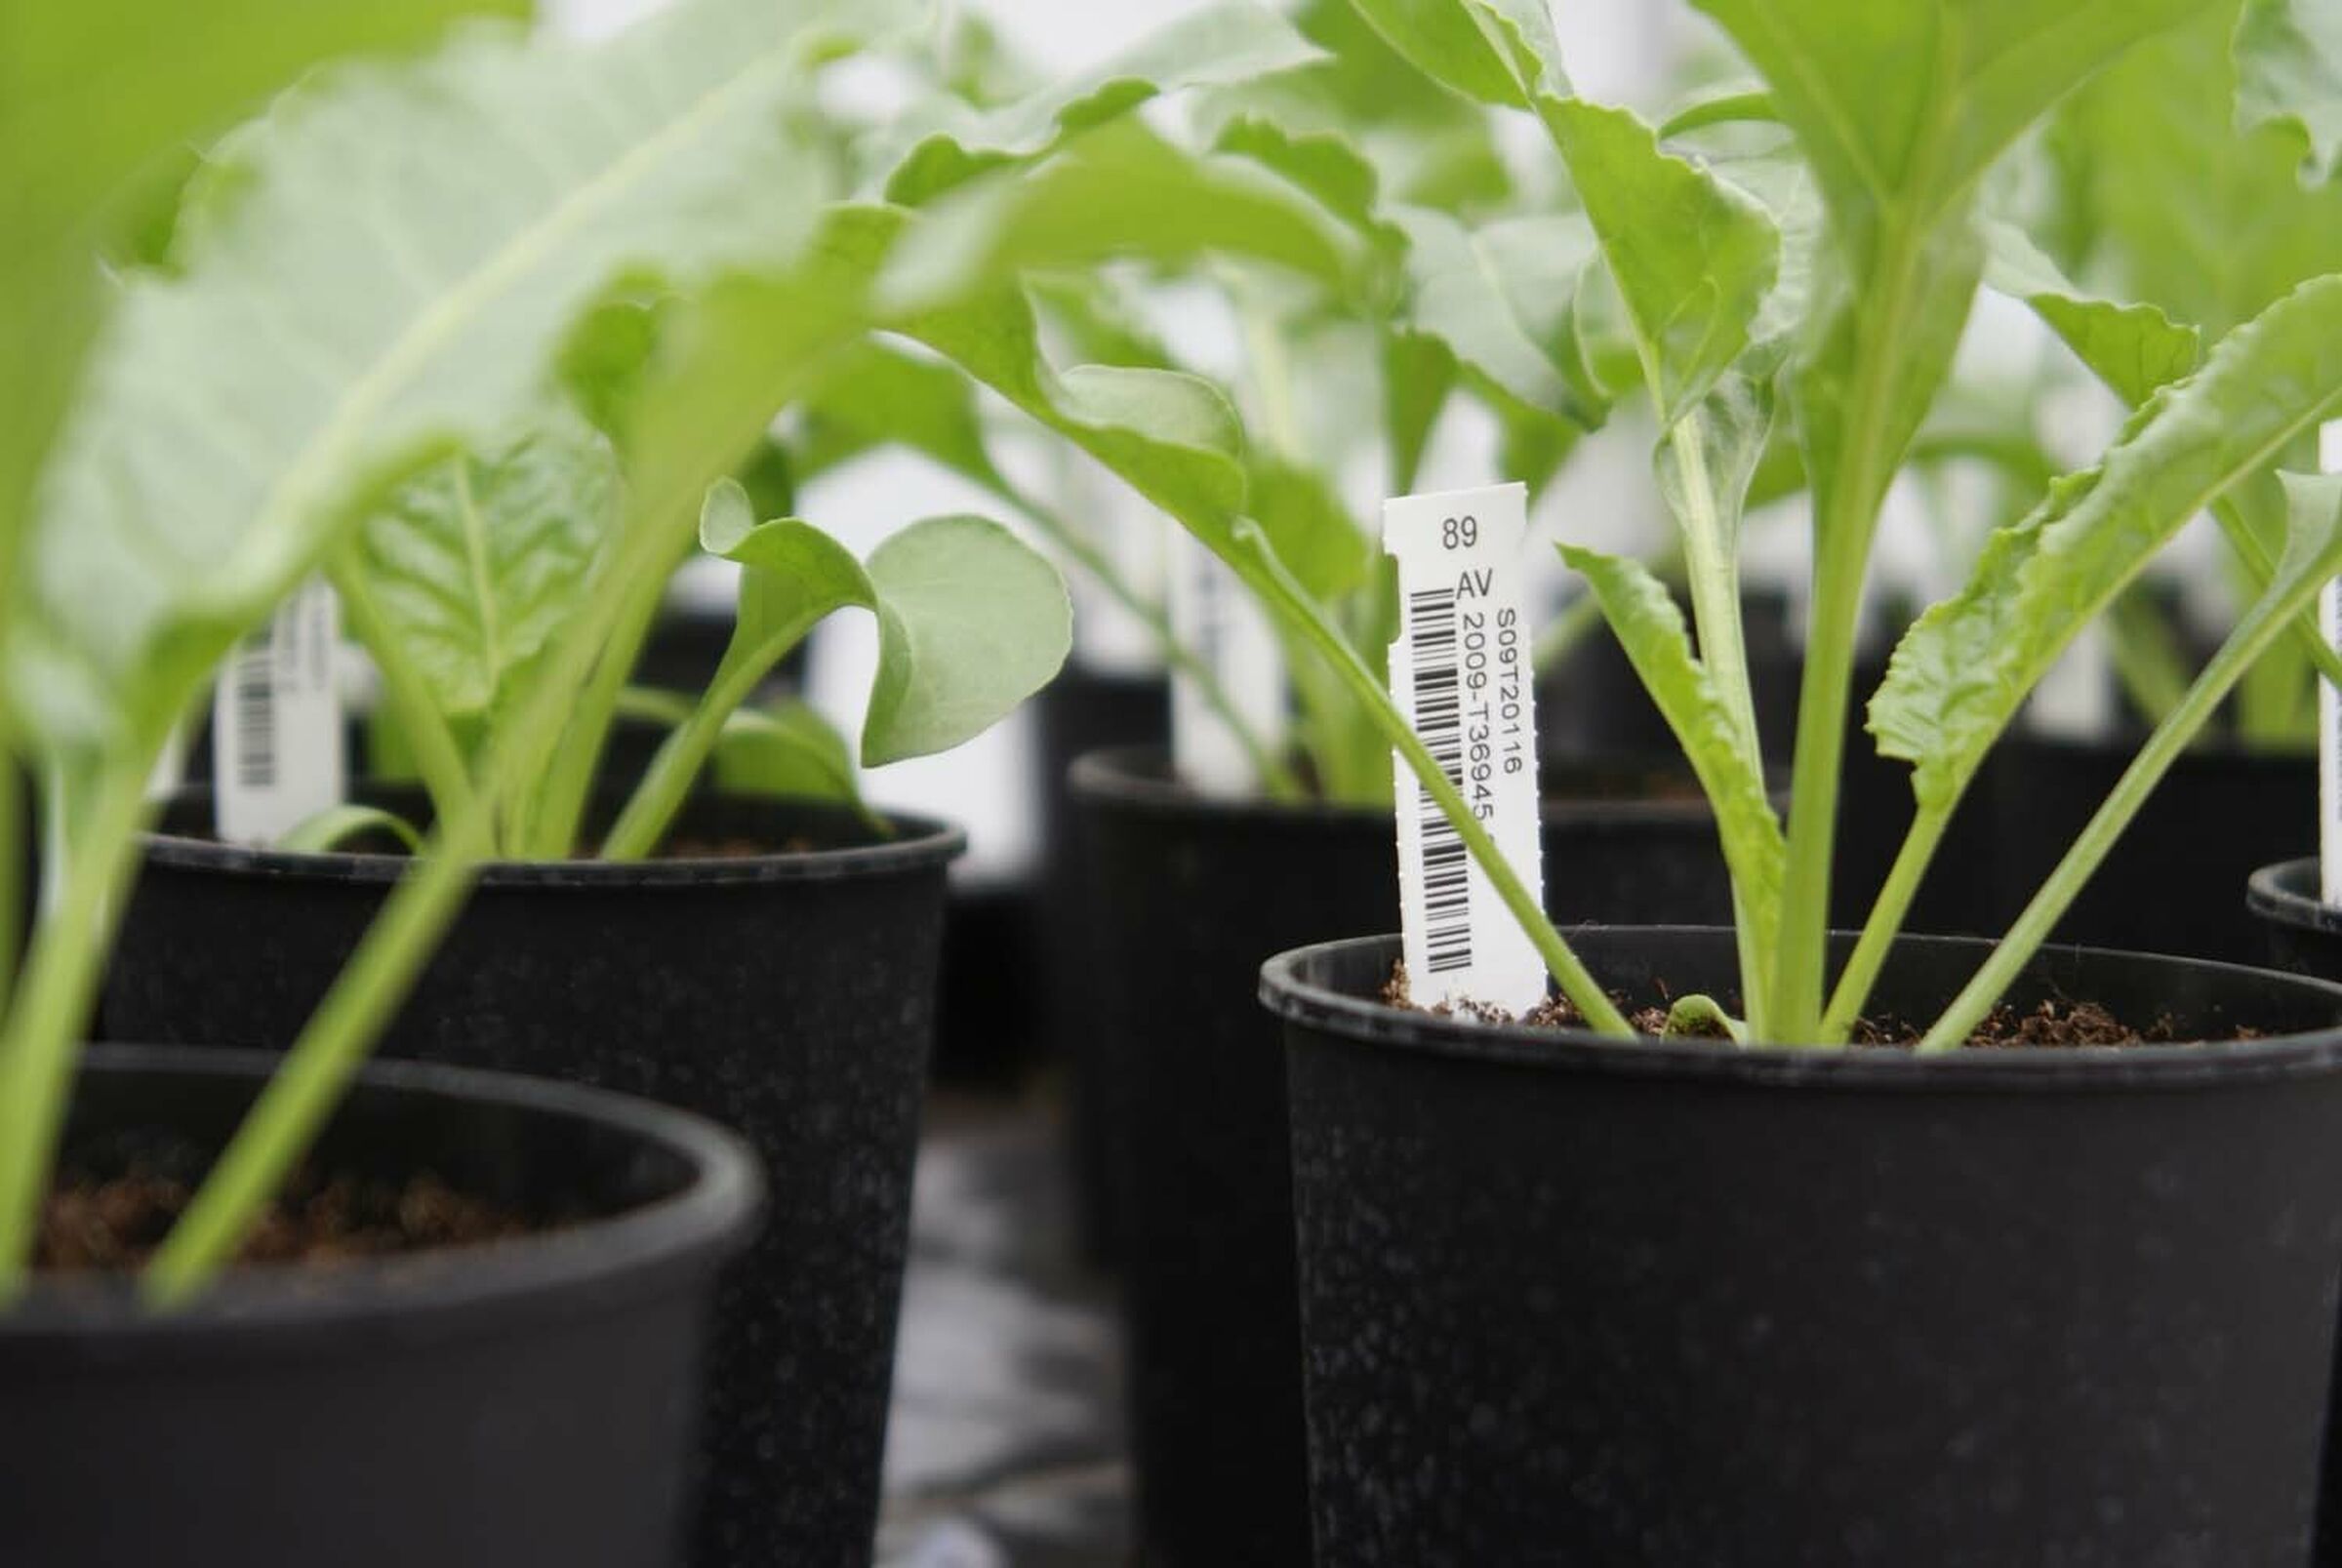 SESVanderHave semences de betteraves sucrières - innovation - la sélection, SVIC, science, nouvelles variétés, génétique, analyse et suivi, R&D, R&I, etiquettes génétique des plantes